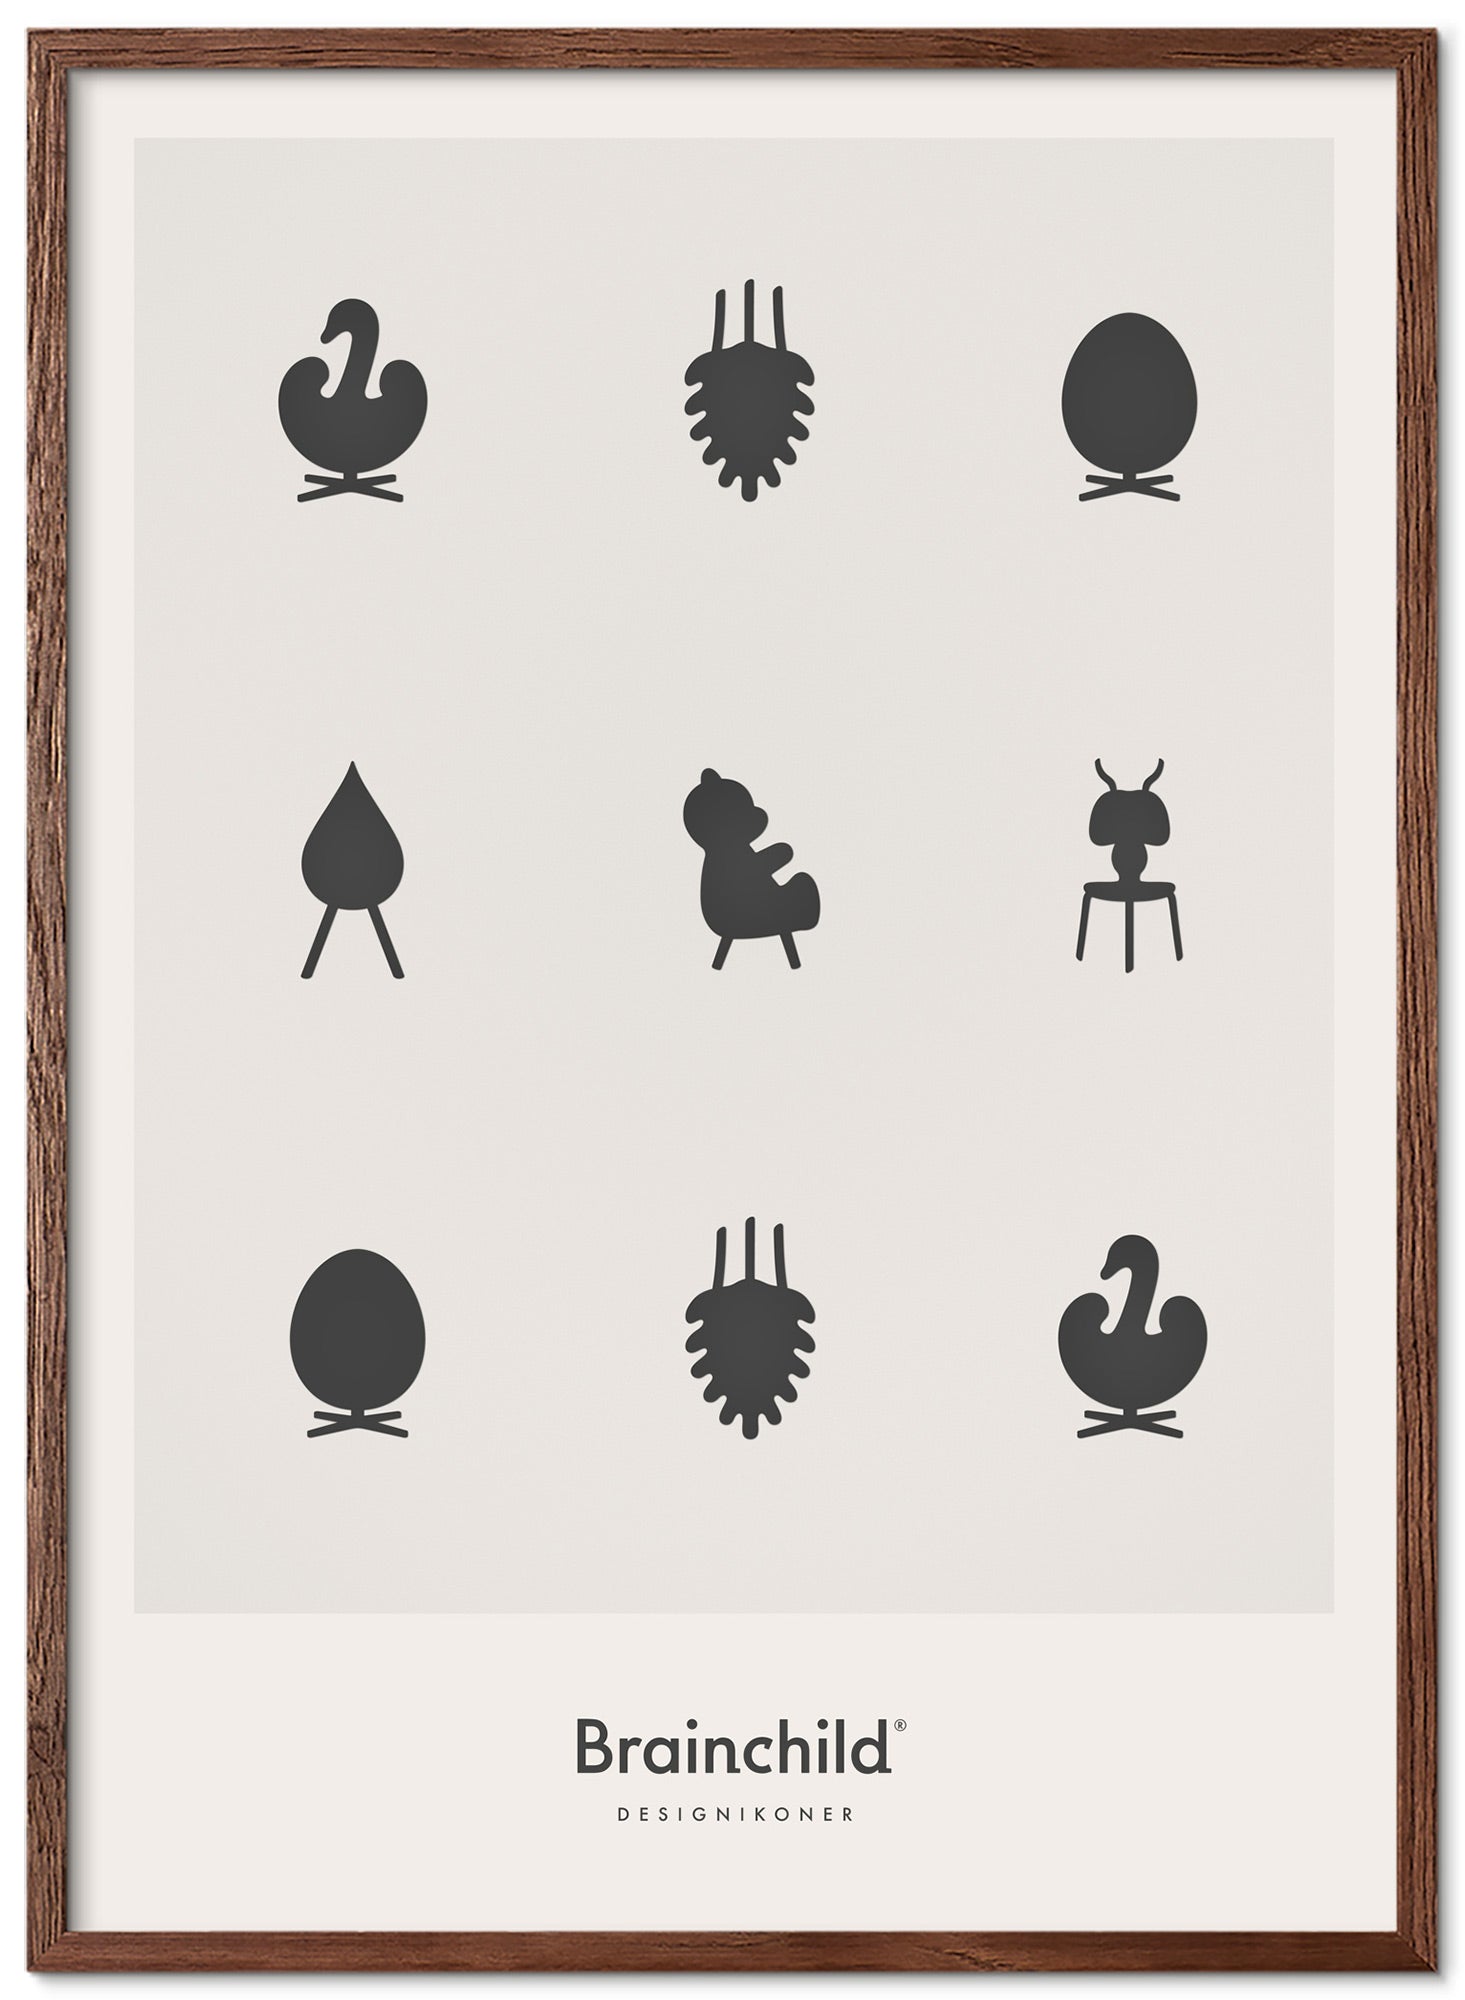 Frame poster di icone di design da un'idea di legno scuro A5, grigio chiaro